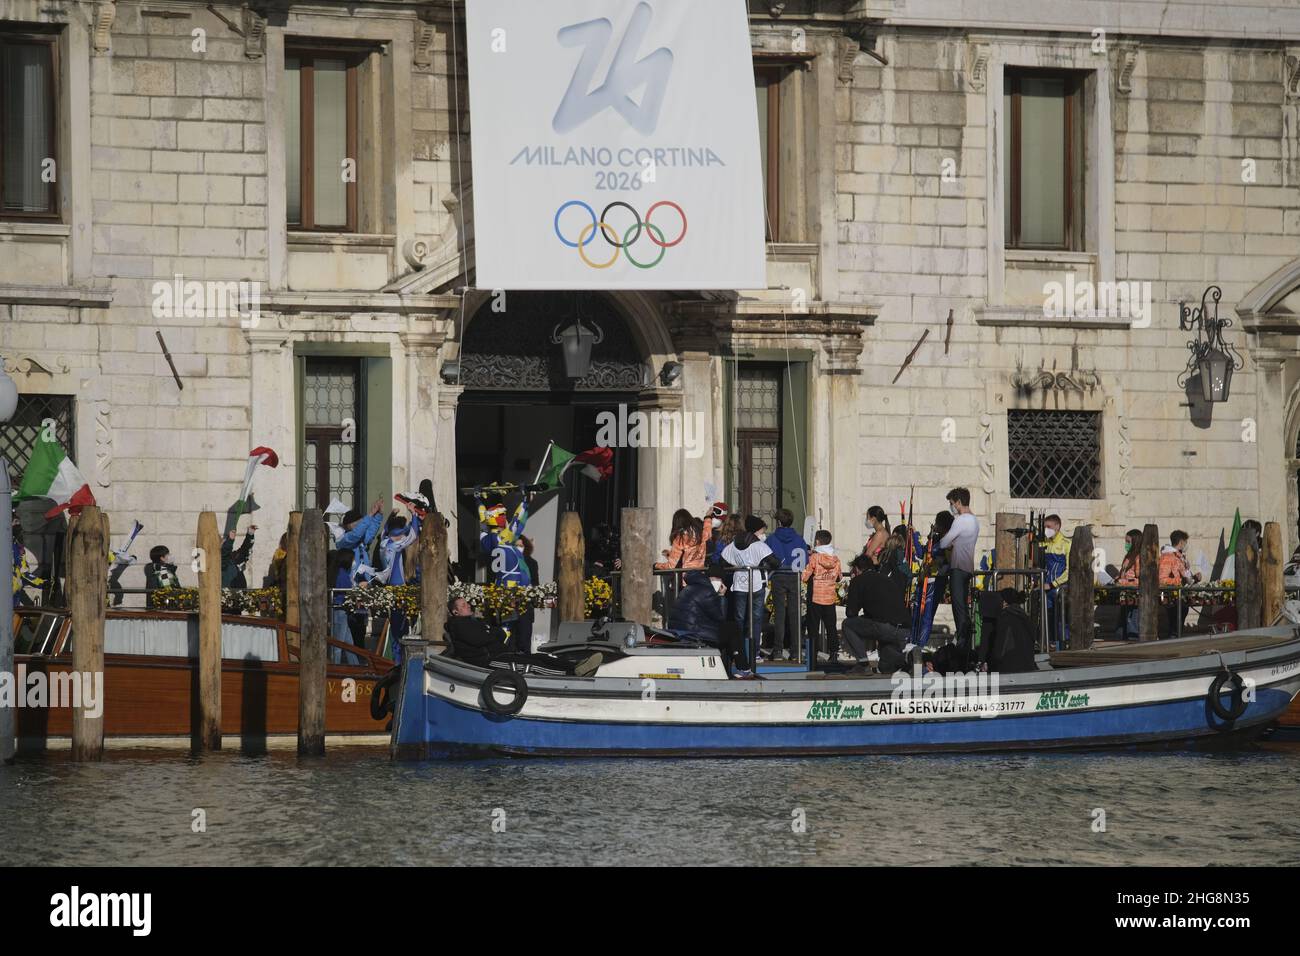 Punti di ripresa per le Olimpiadi invernali Cortina Milano 2026 a Venezia, Italia, gennaio 18 2022. (MVS) Foto Stock